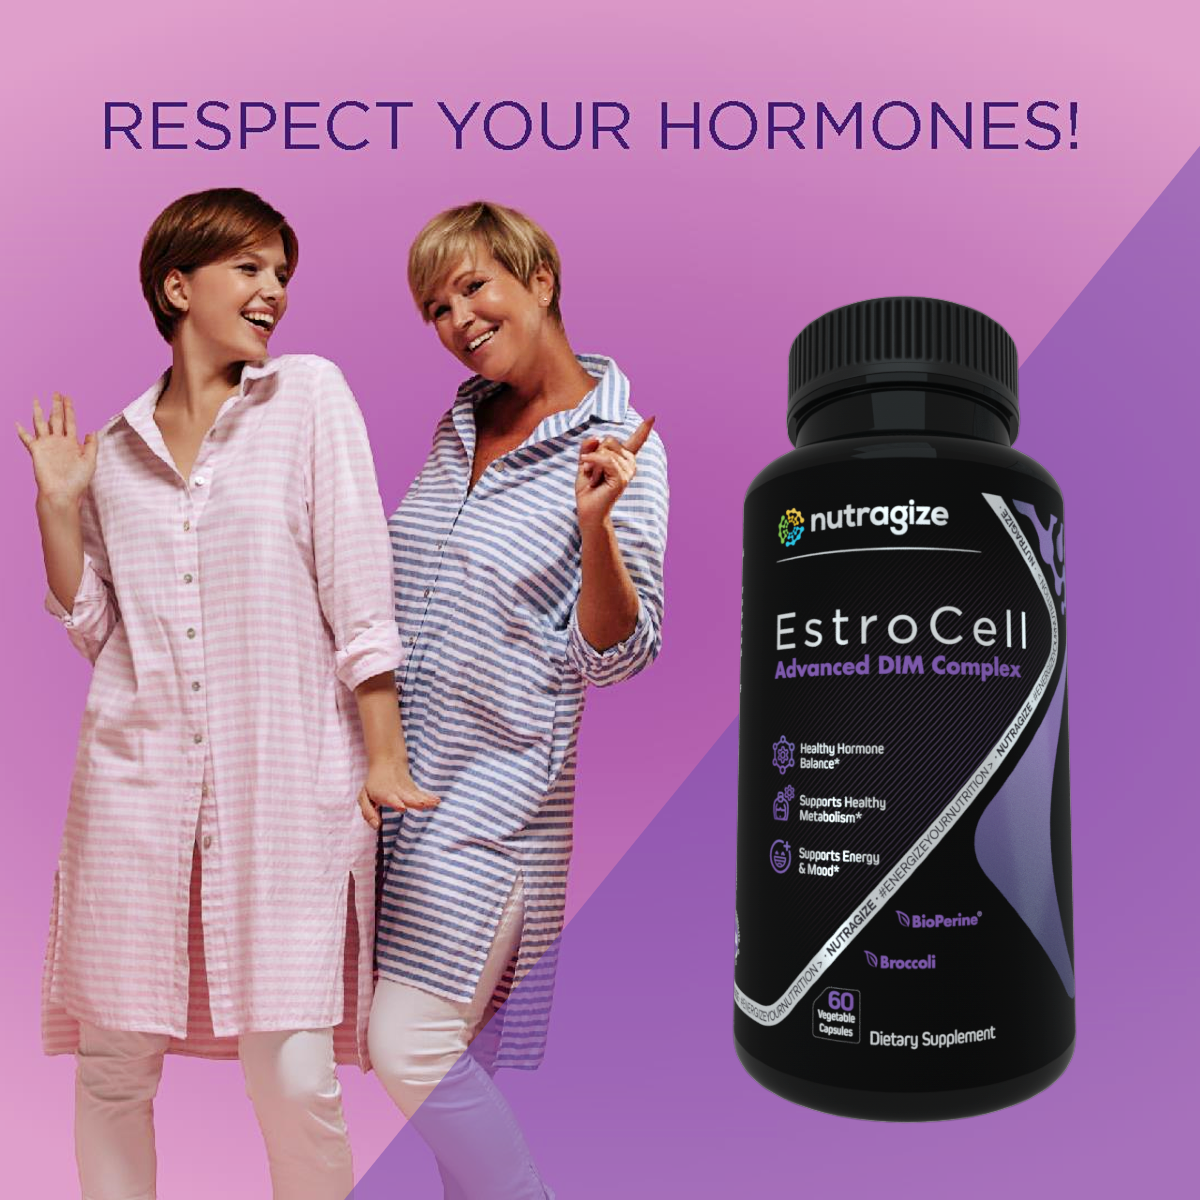 Respect Your Hormones!